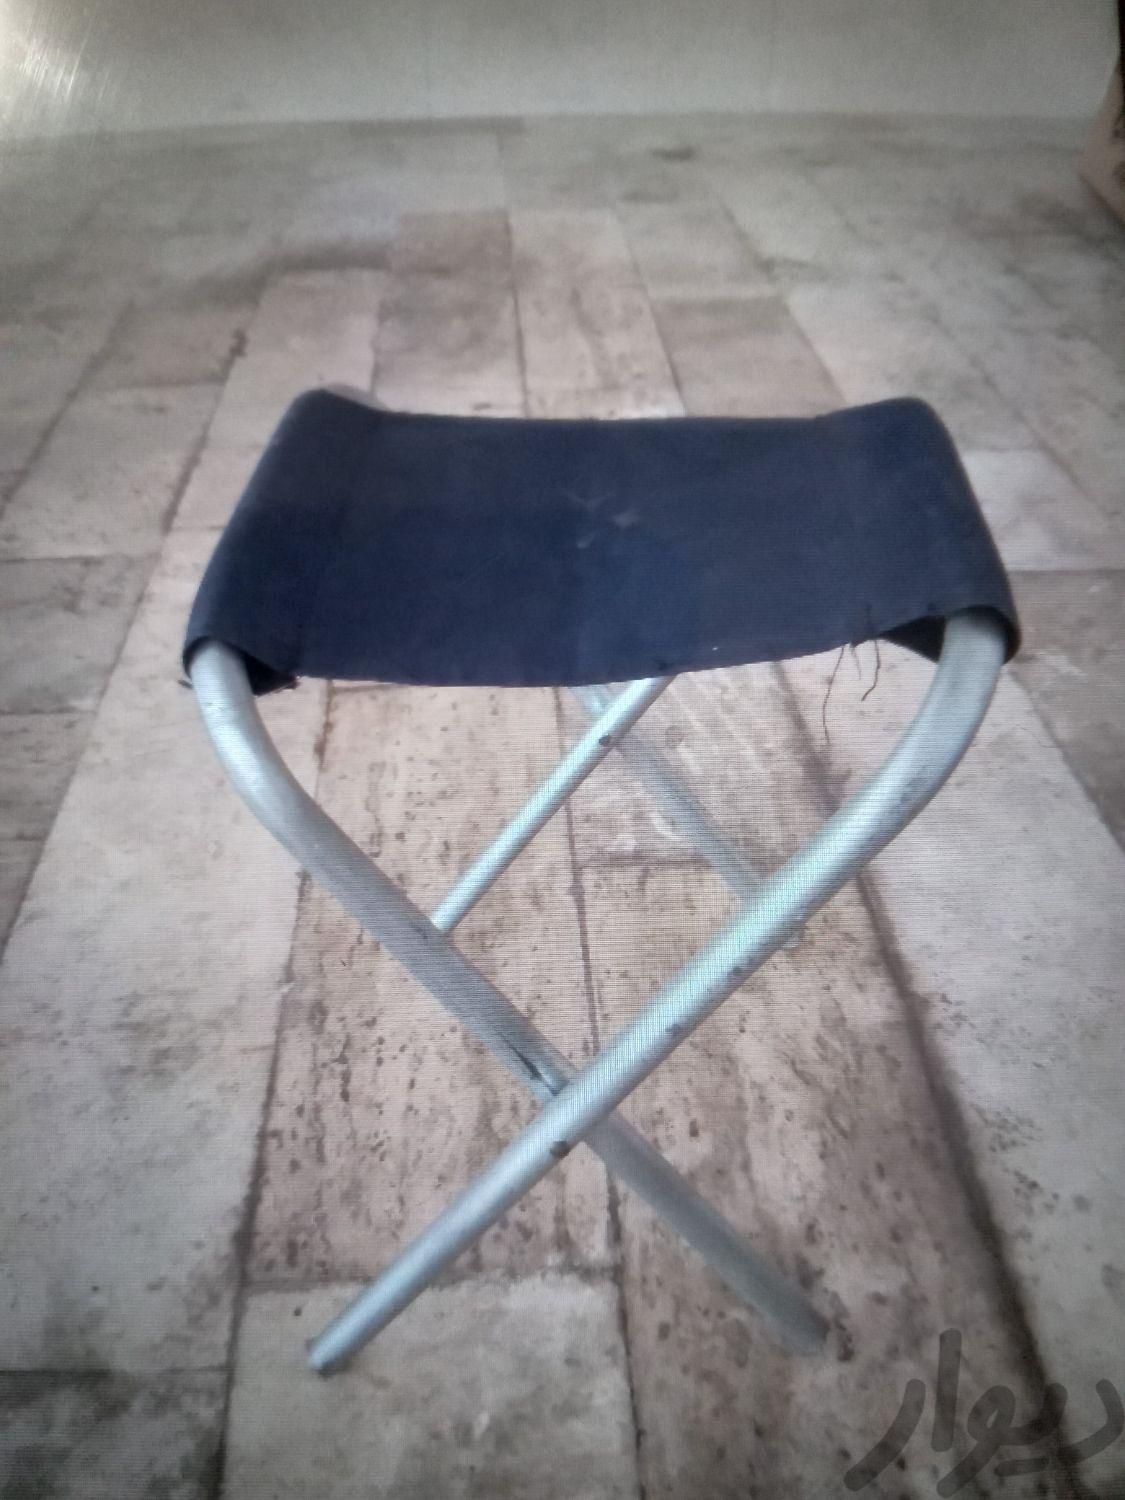 صندلی تاشو پایه فلزی|صندلی و نیمکت|تهران, امیریه|دیوار